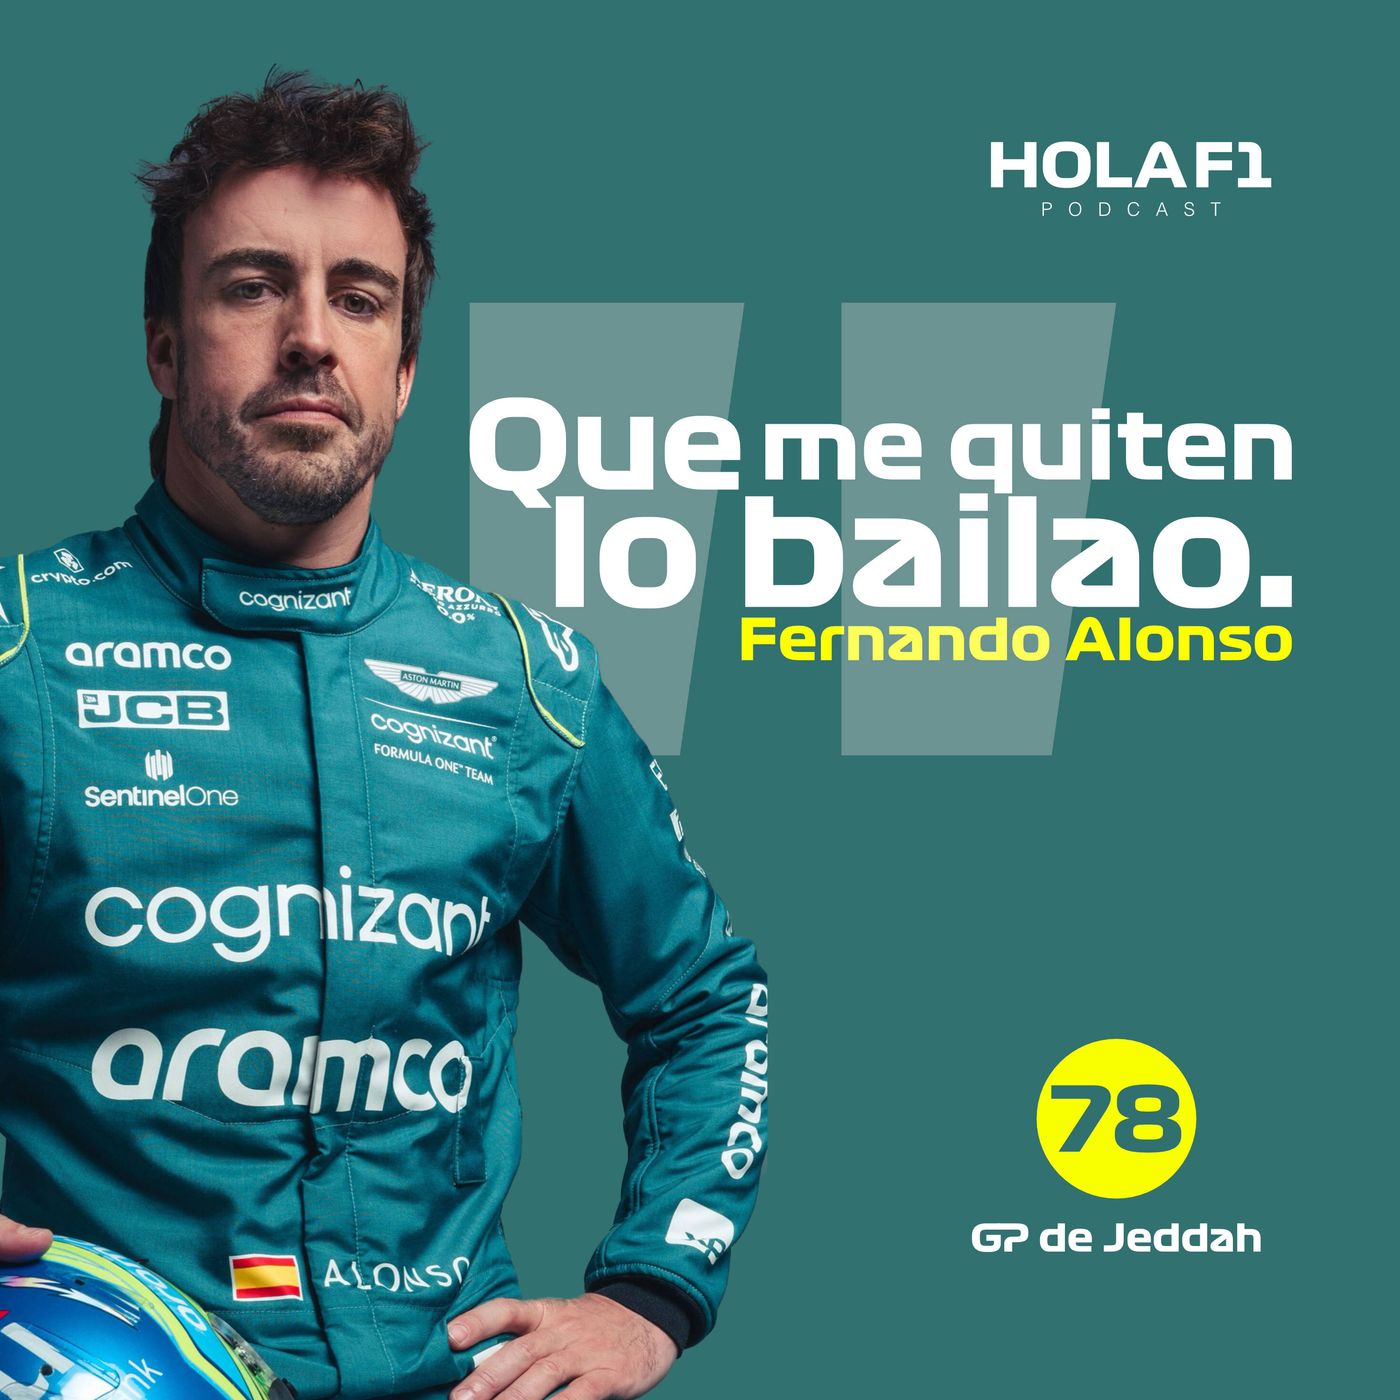 GP Jeddah: "Que me quiten lo bailao". - Fernando Alonso